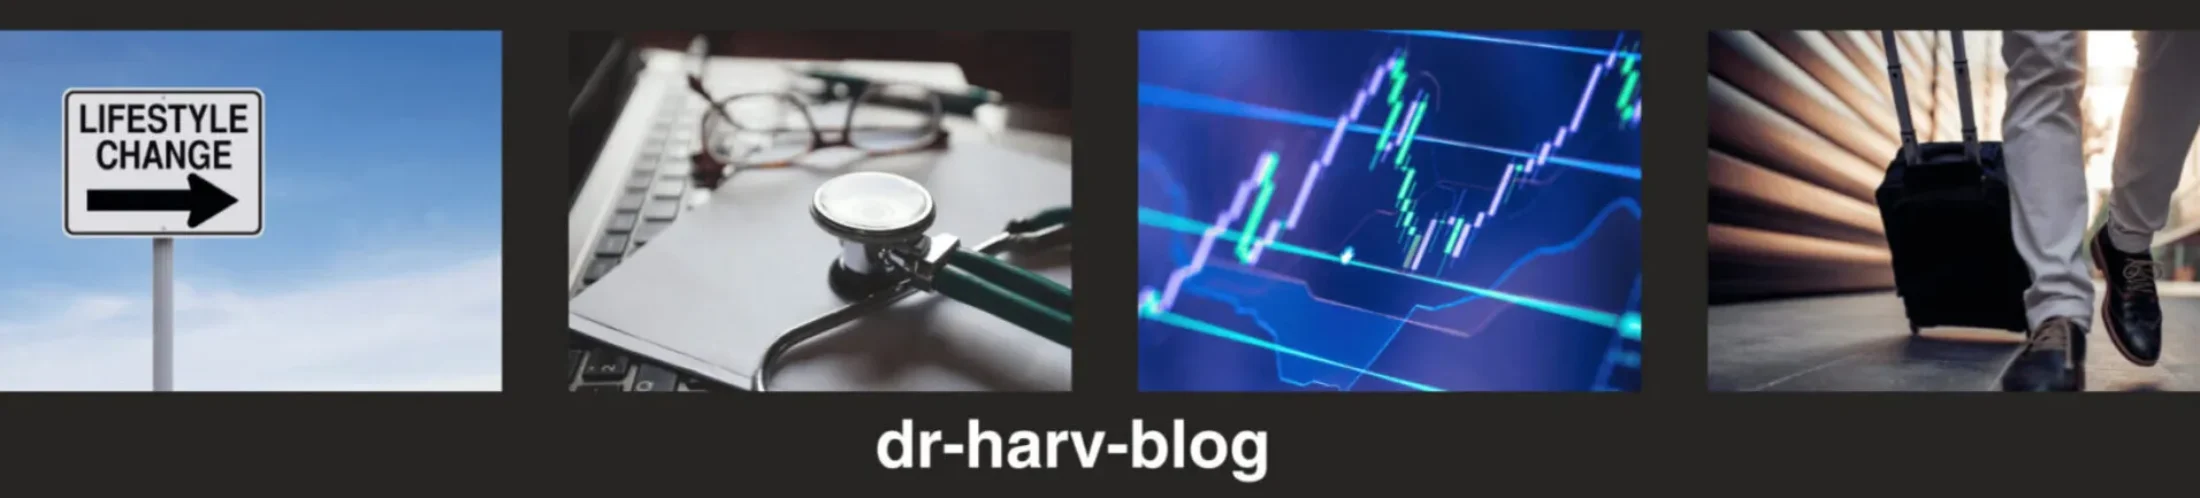 dr-harv-blog-header